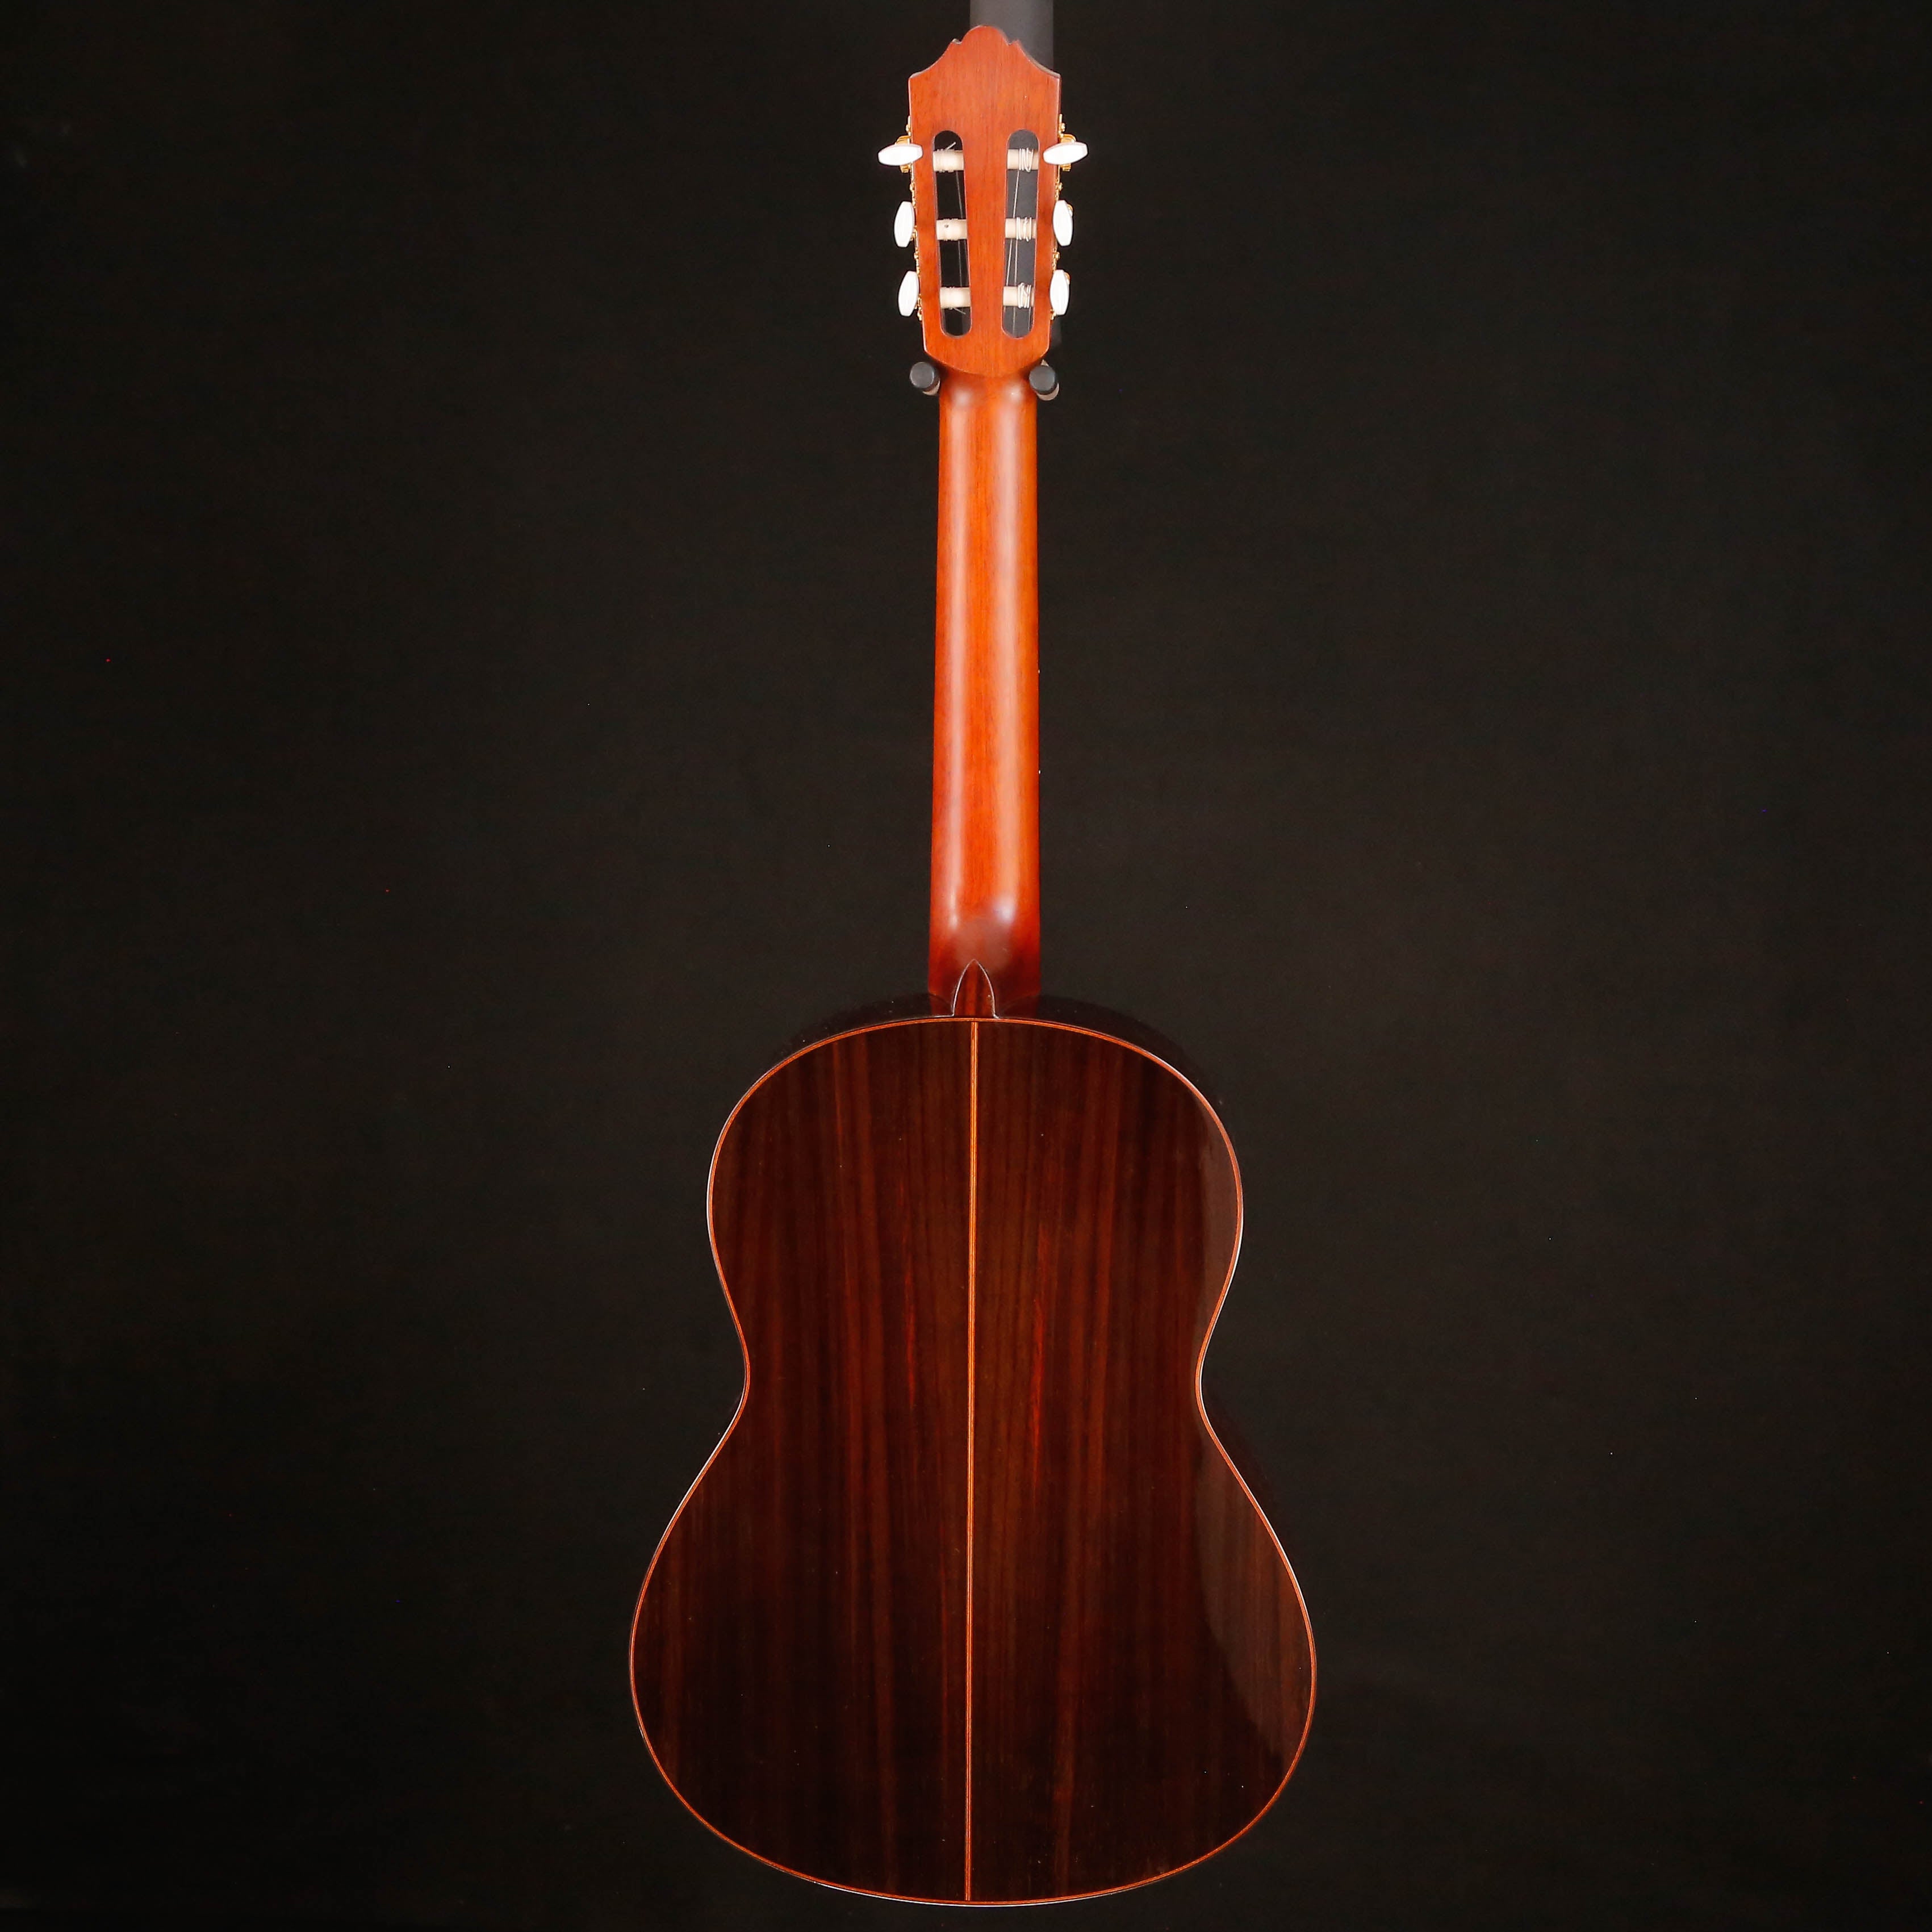 Yamaha CG182S Classical Guitar, Spruce Top